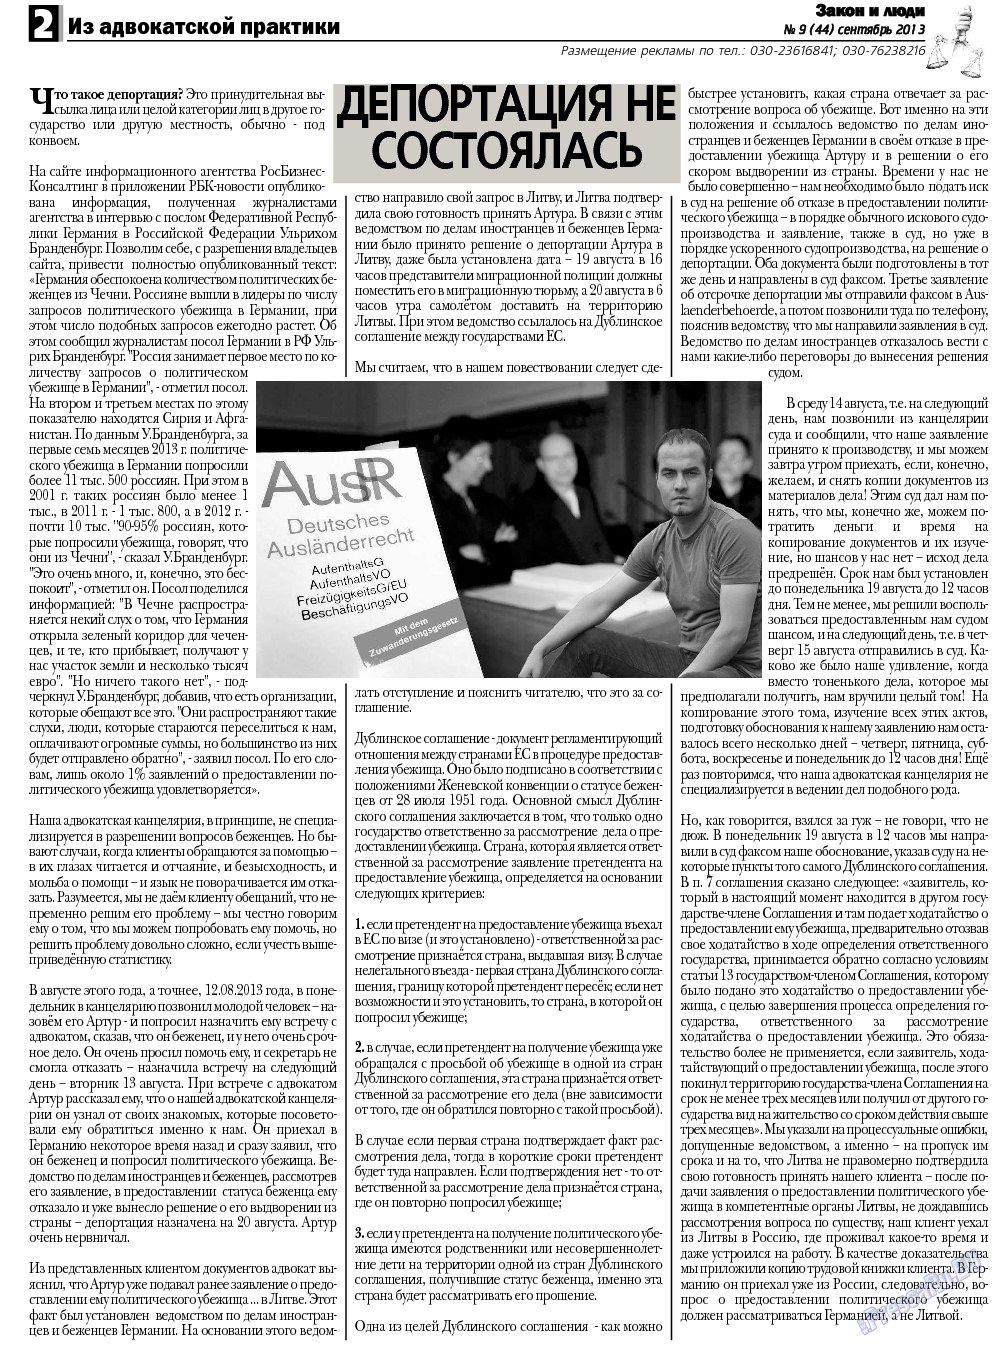 Закон и люди, газета. 2013 №9 стр.2